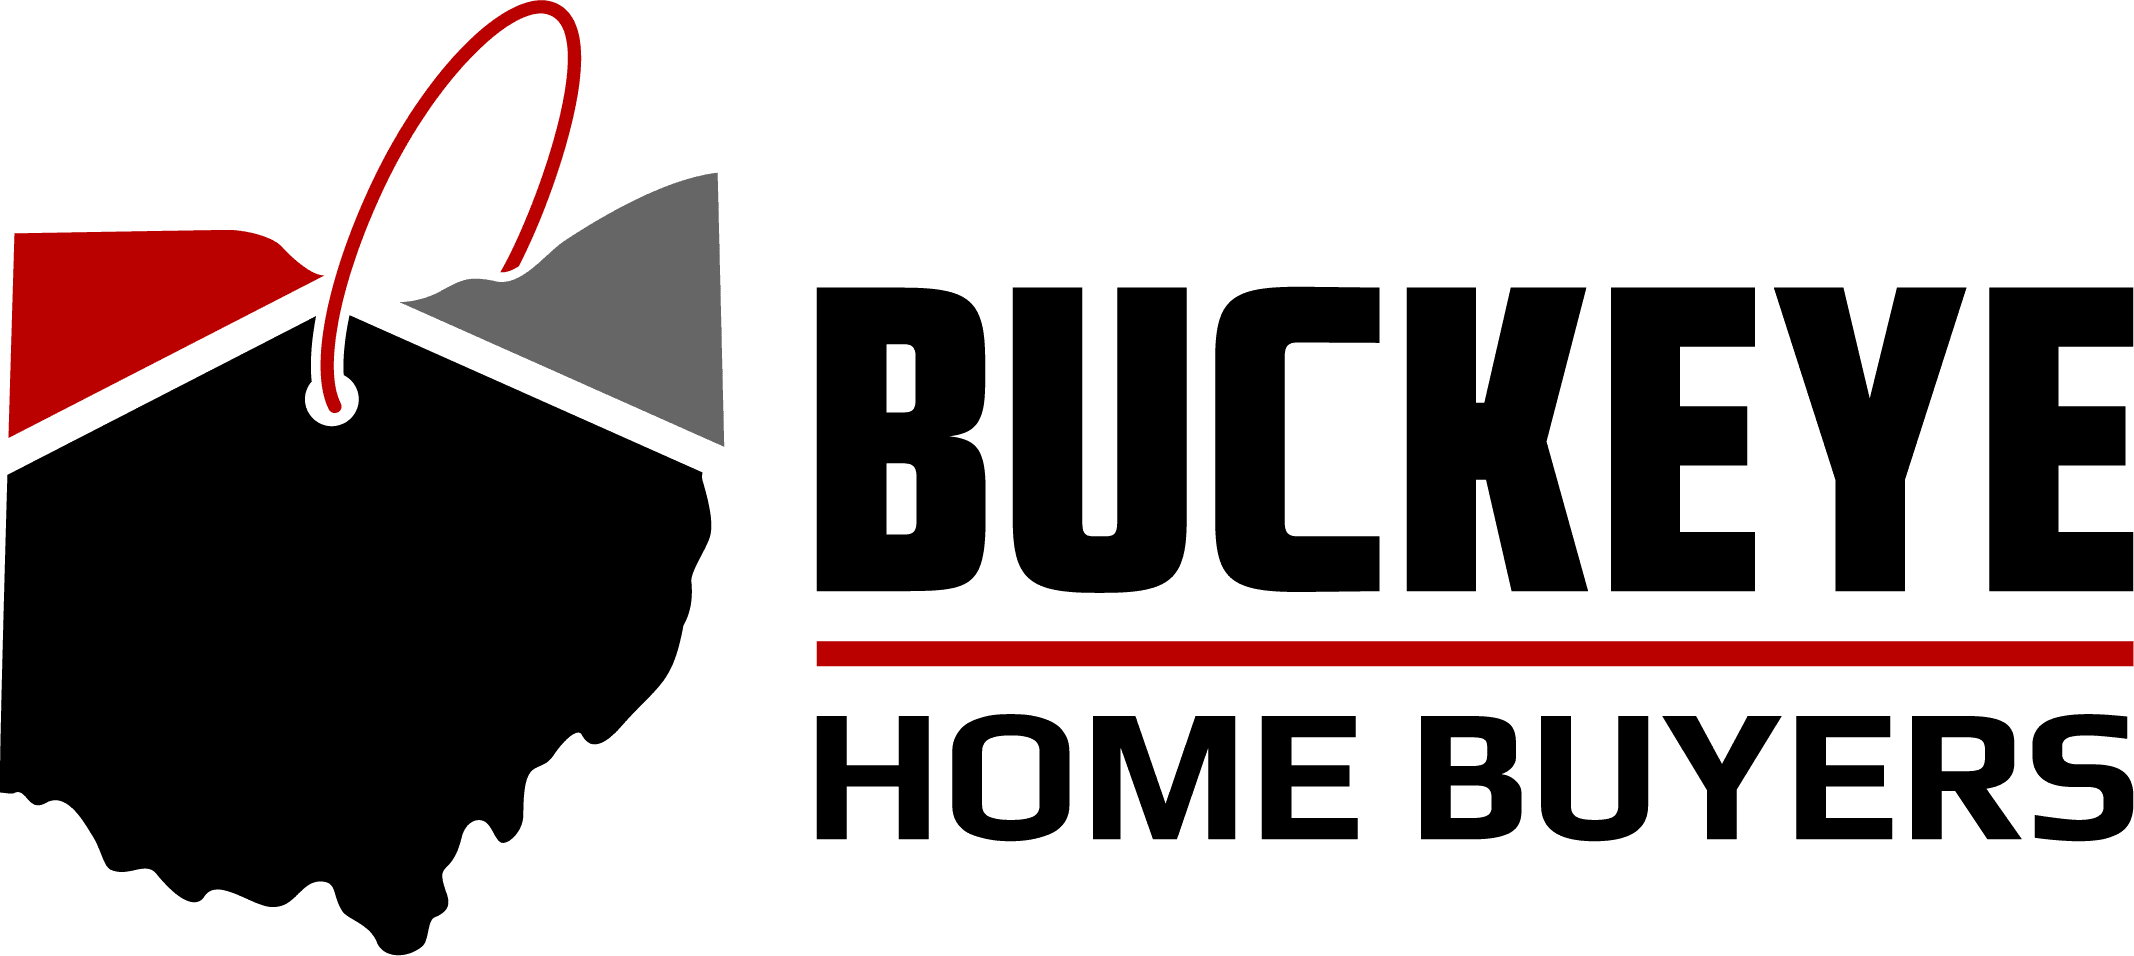 Buckeye Home Buyers Final Horizontal color